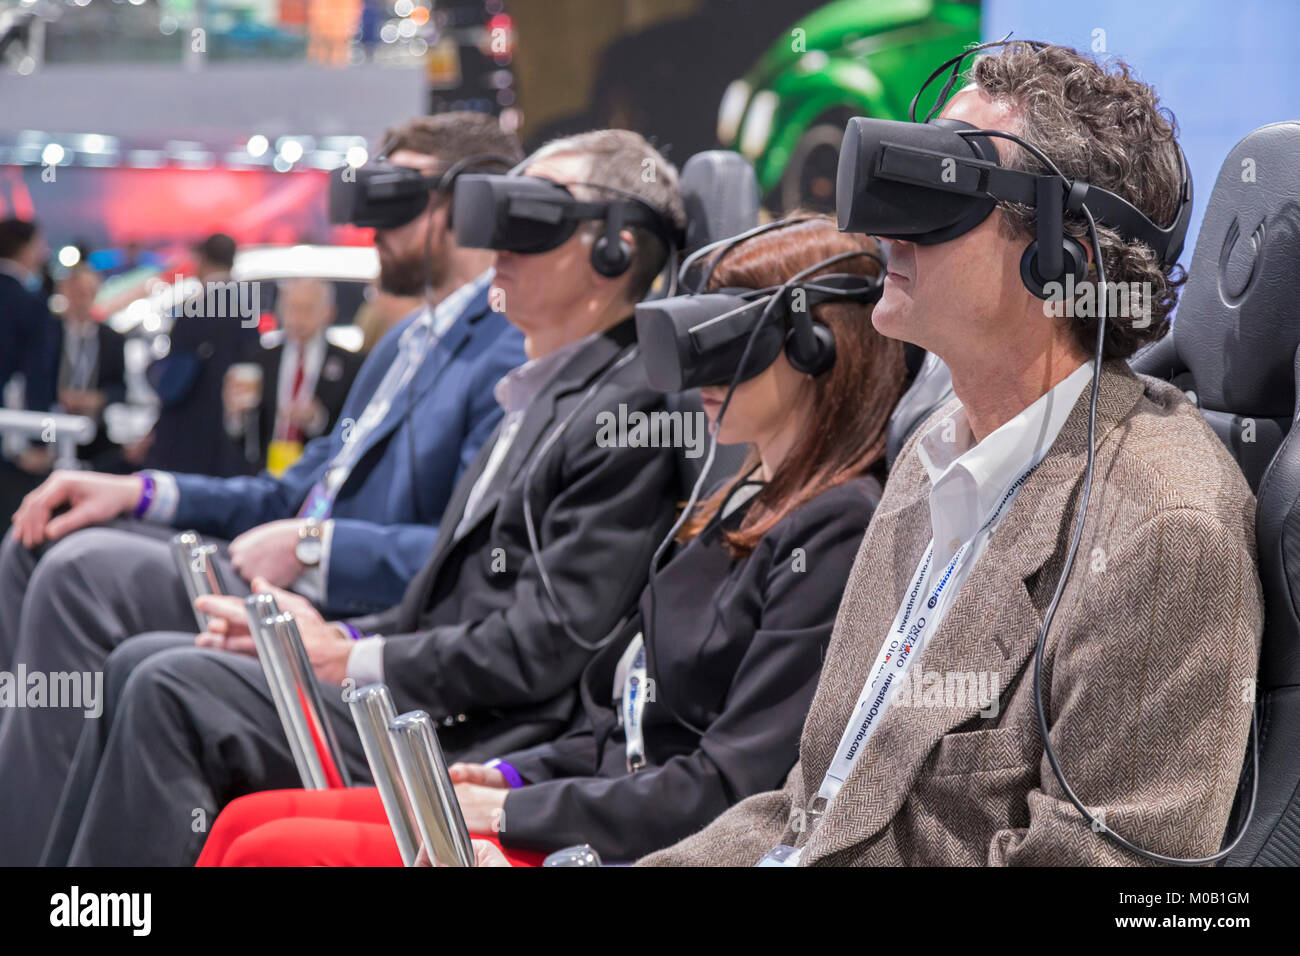 Detroit, Michigan - les gens prennent une réalité virtuelle à travers la "ville de demain" de Ford en matière de mobilité VR Expérience au cours de l'Amérique du Nord Banque D'Images